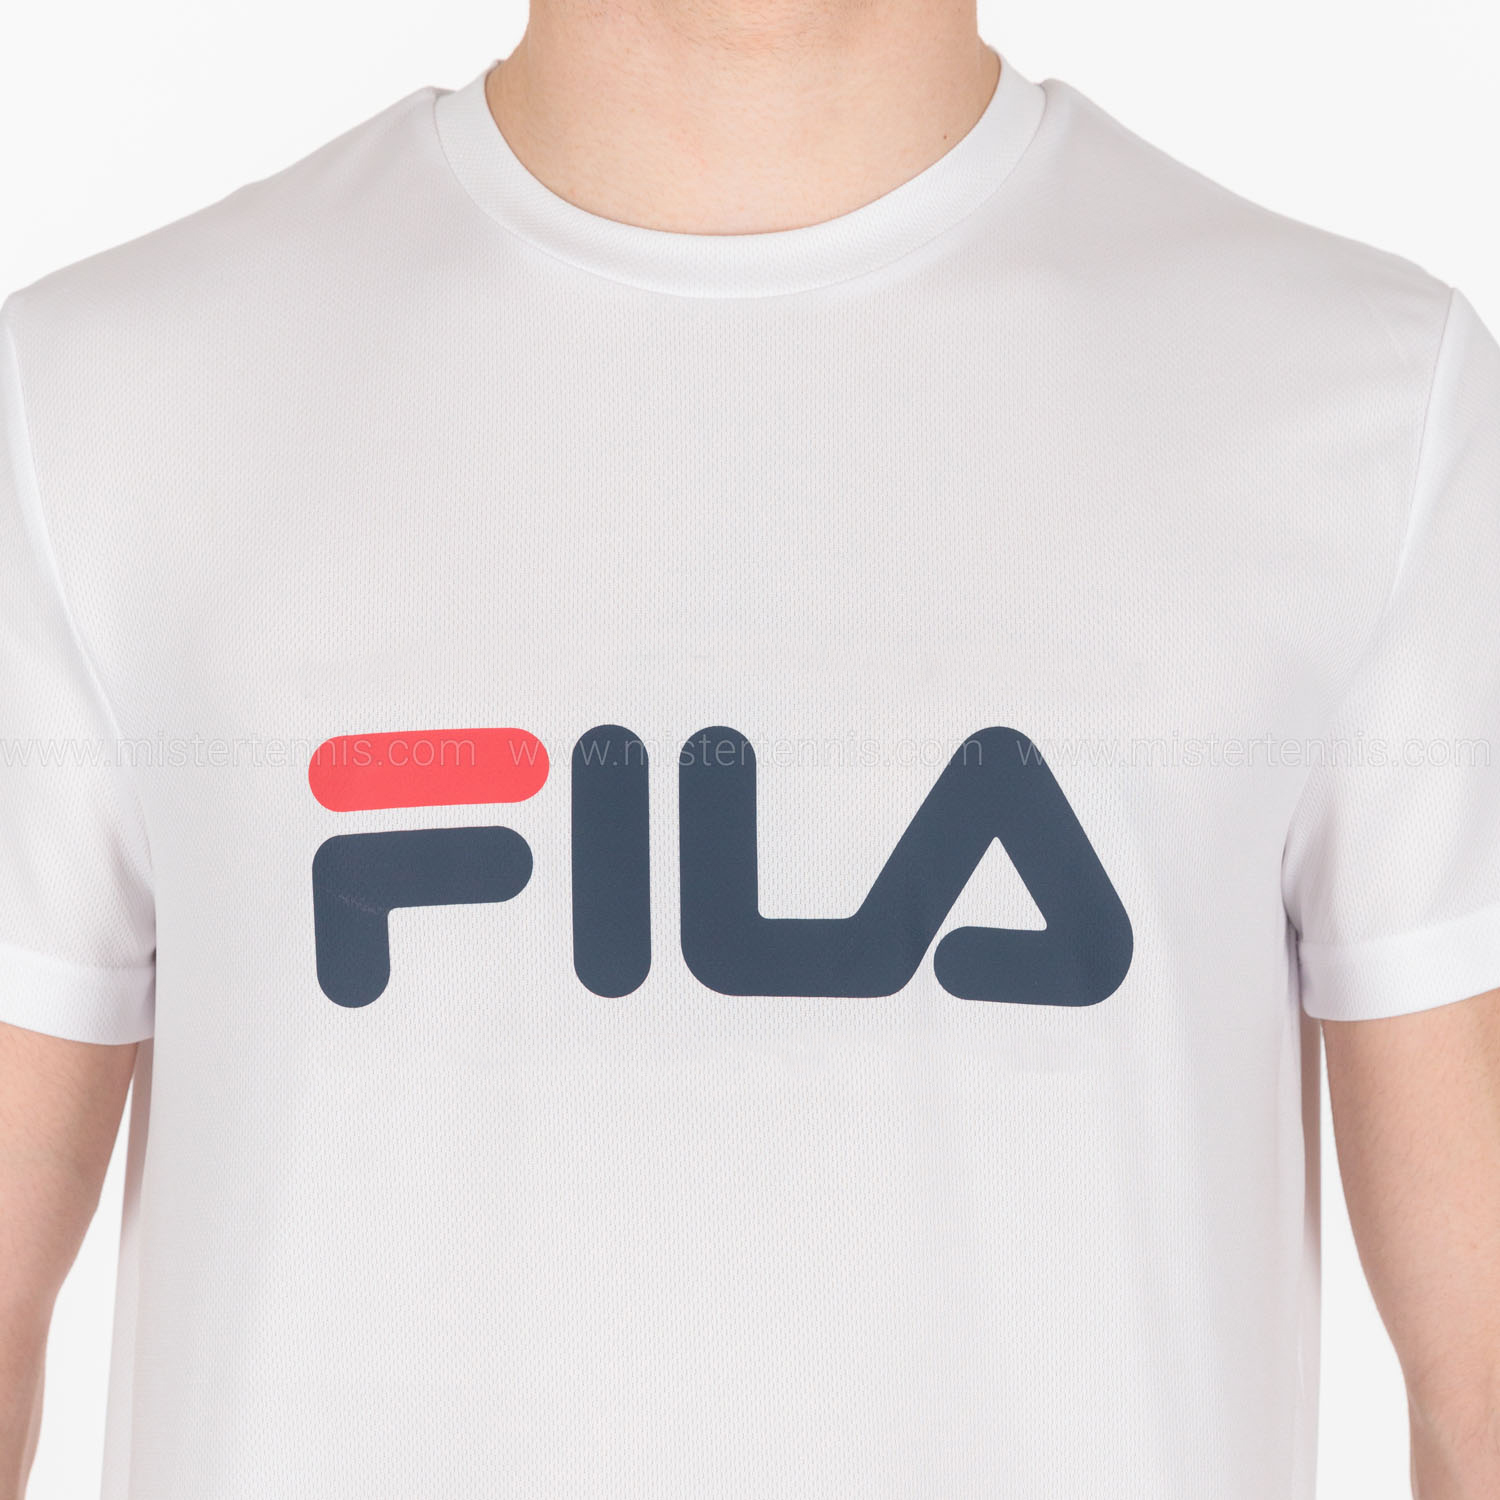 Fila Court T-Shirt - White